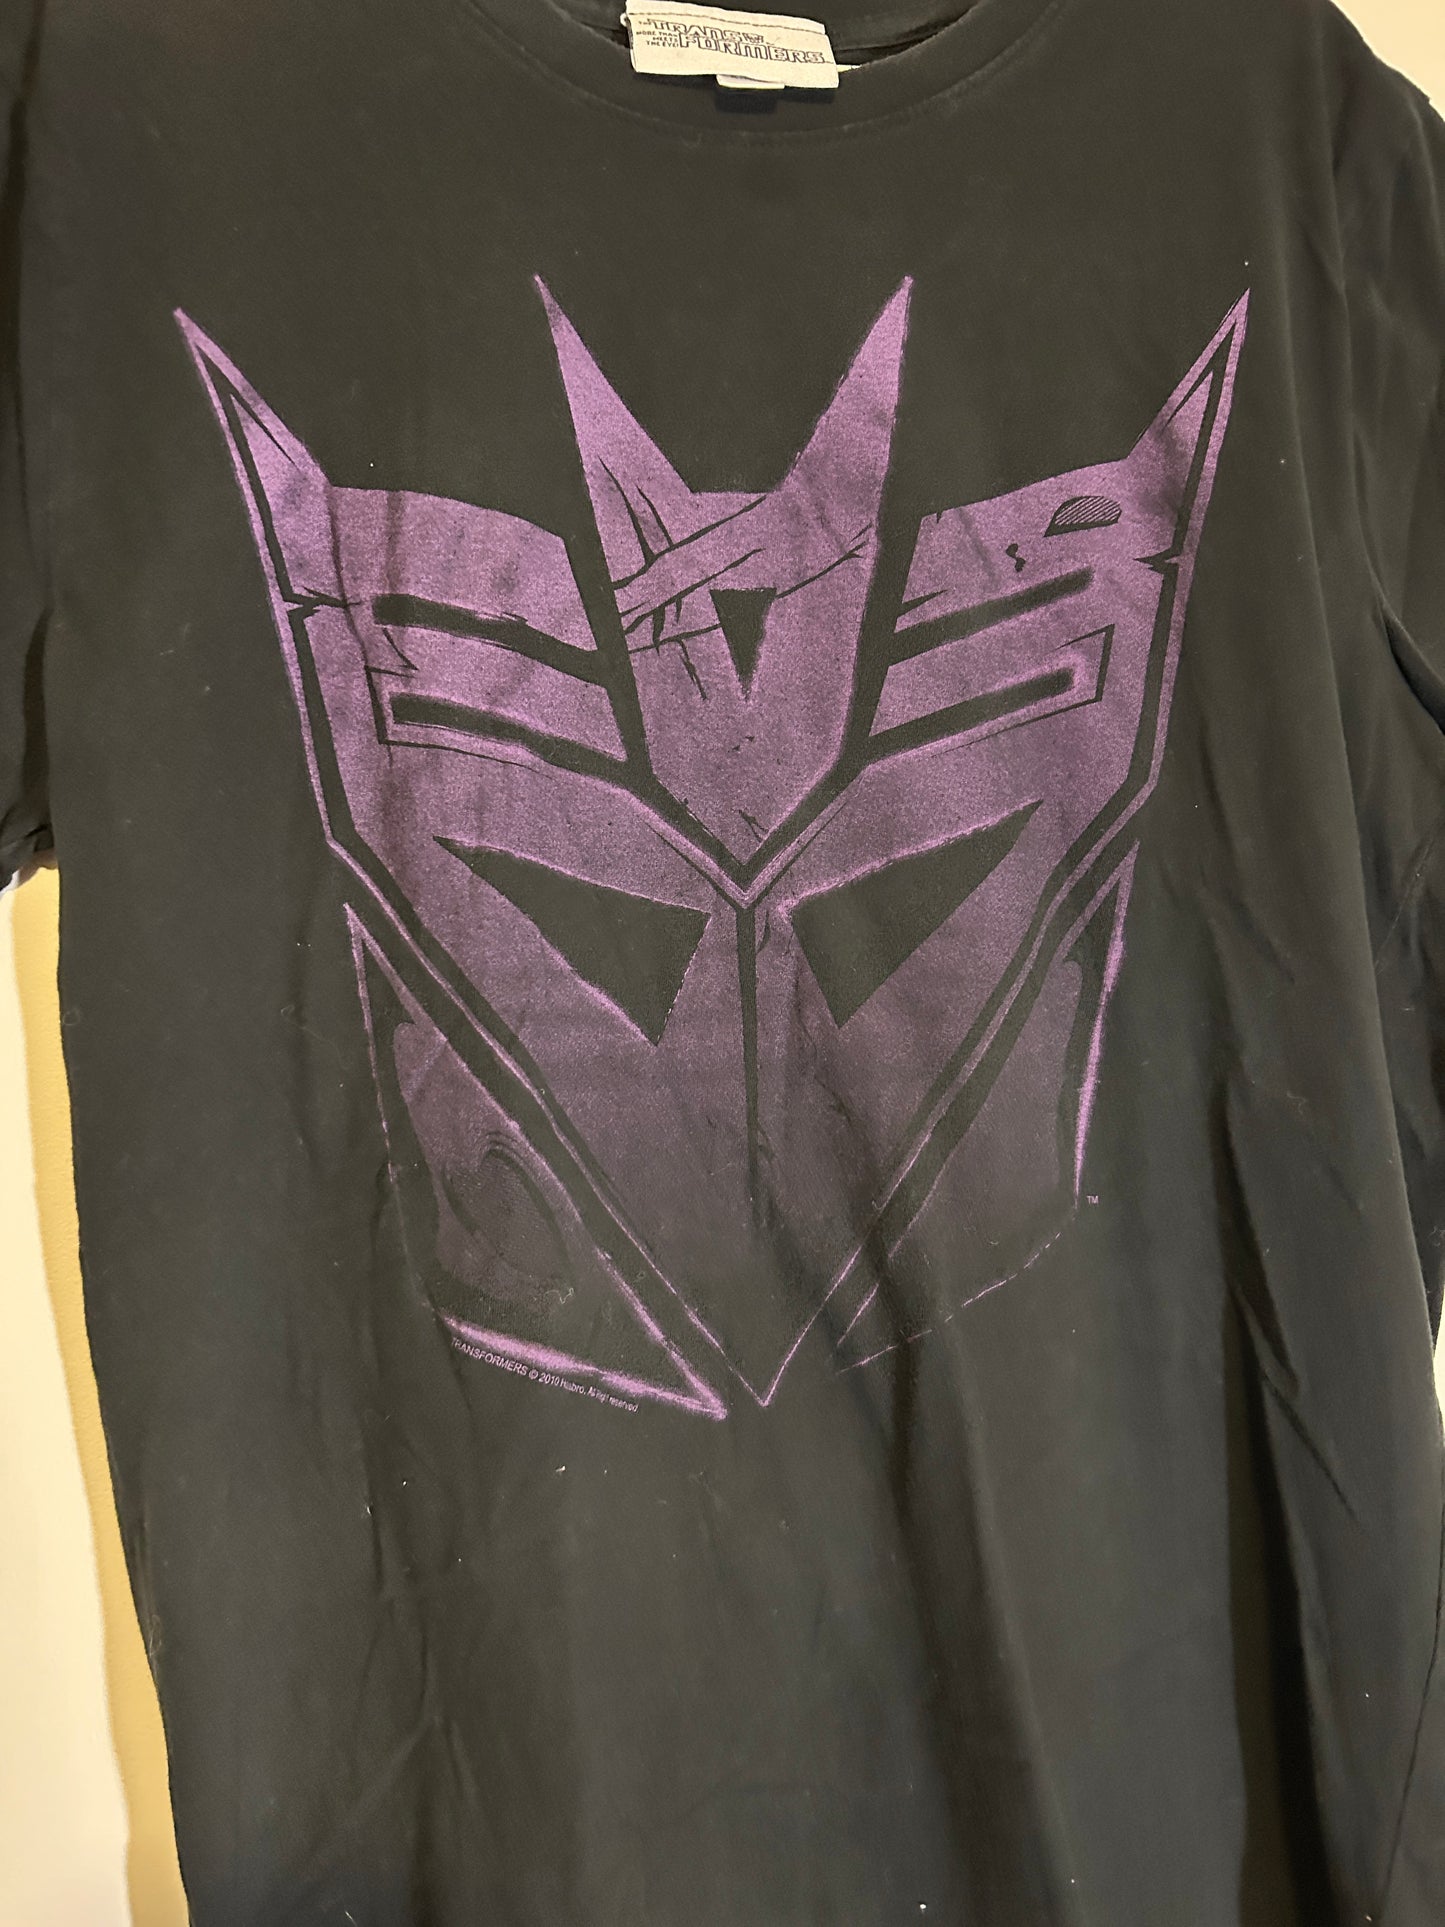 2010 Transformers Decepticon Tee (XL)